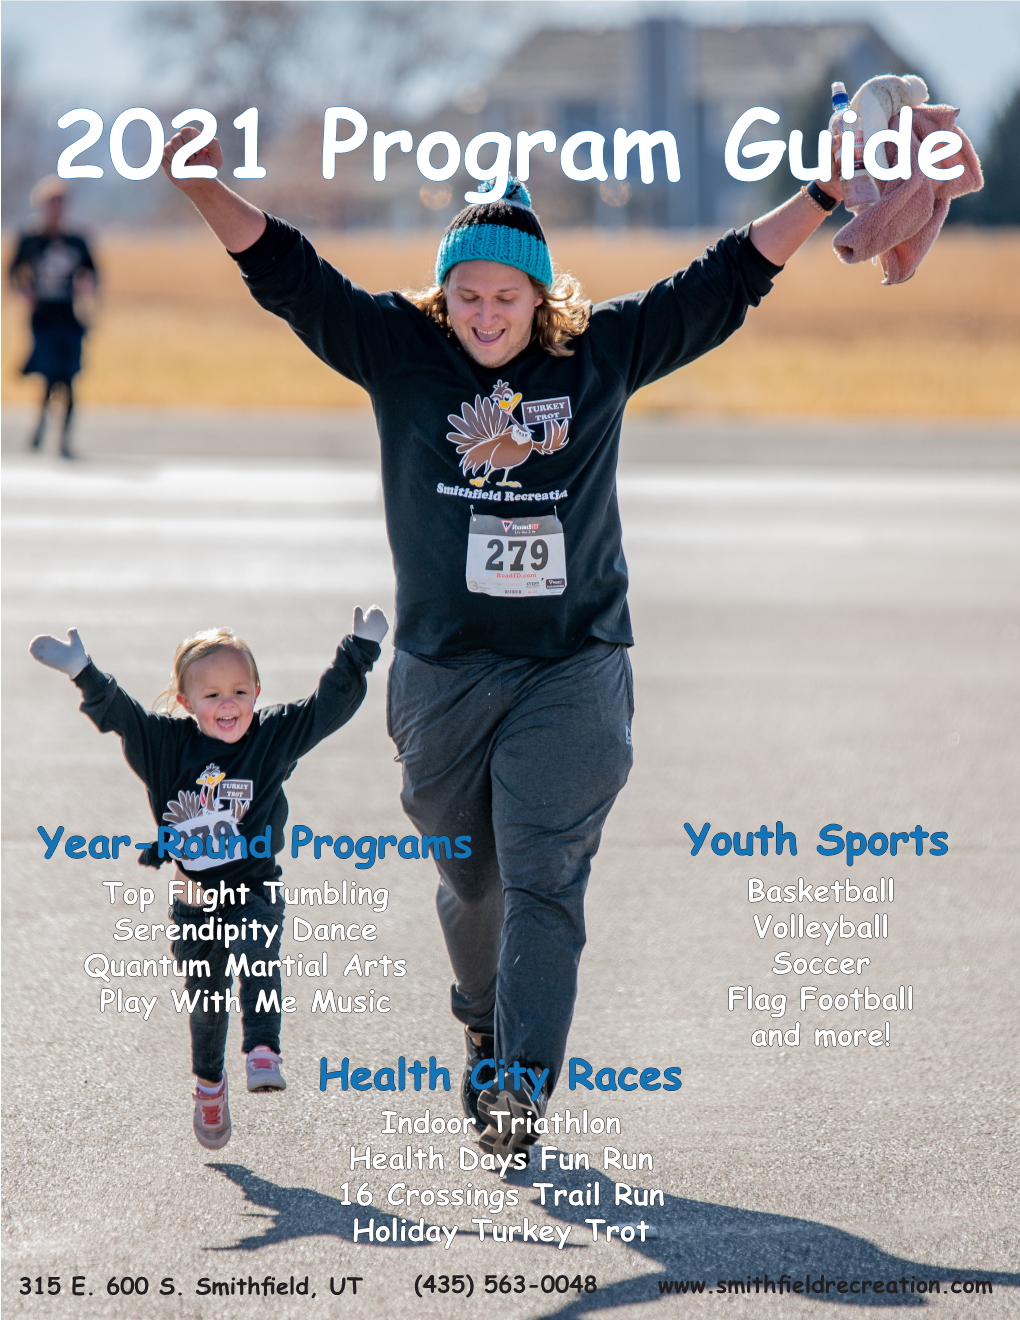 2021 Program Guide